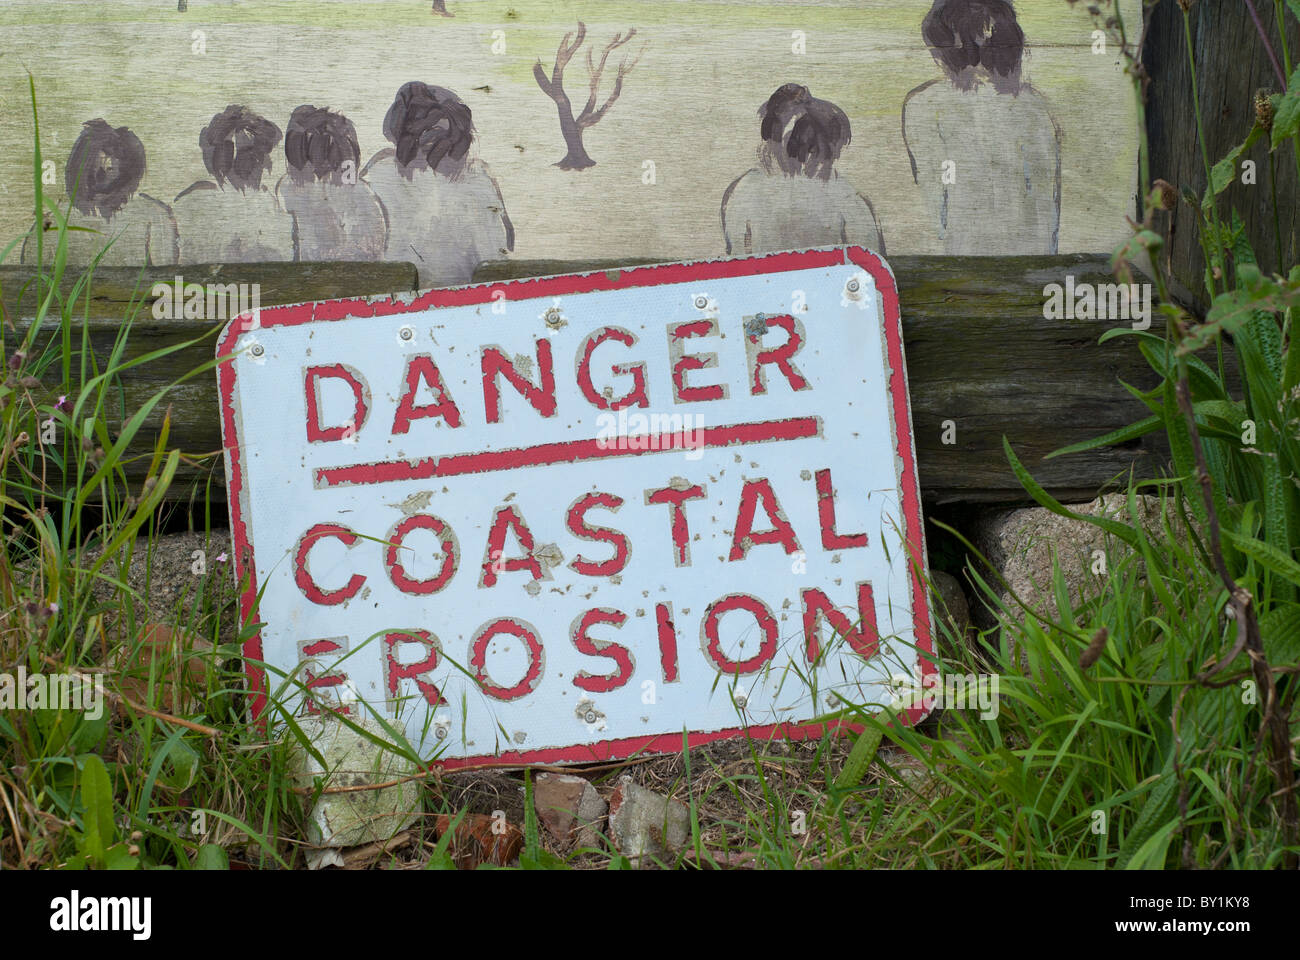 Coastal Erosion Sign, East Yorkshire, England Stock Photo